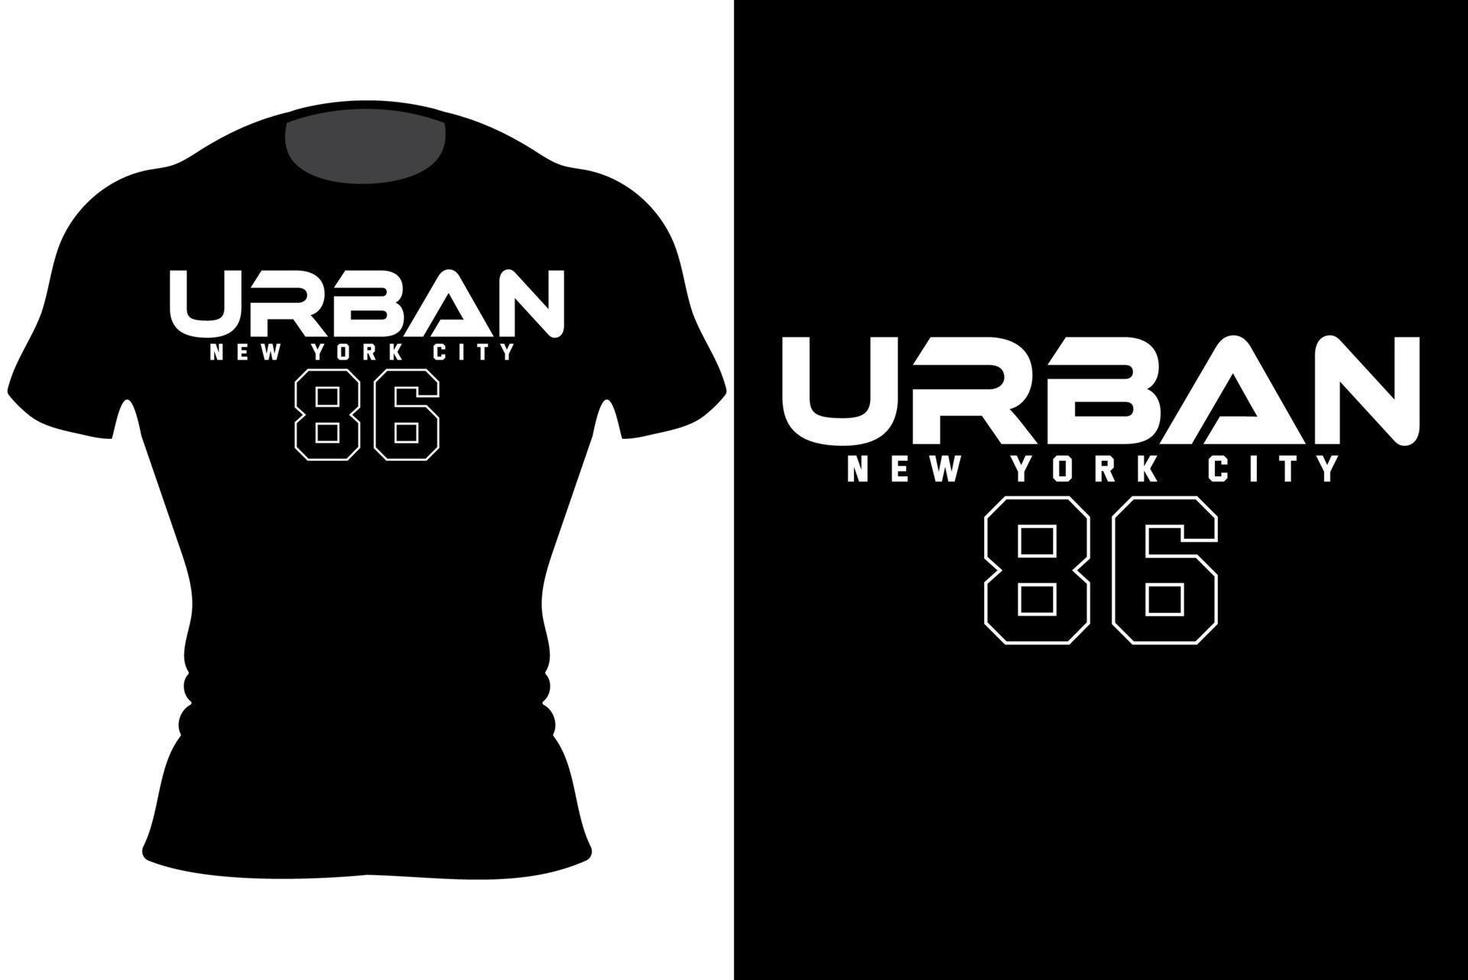 ville urbaine de new york. garder le travail ne jamais quitter la conception de t-shirt de typographie vecteur